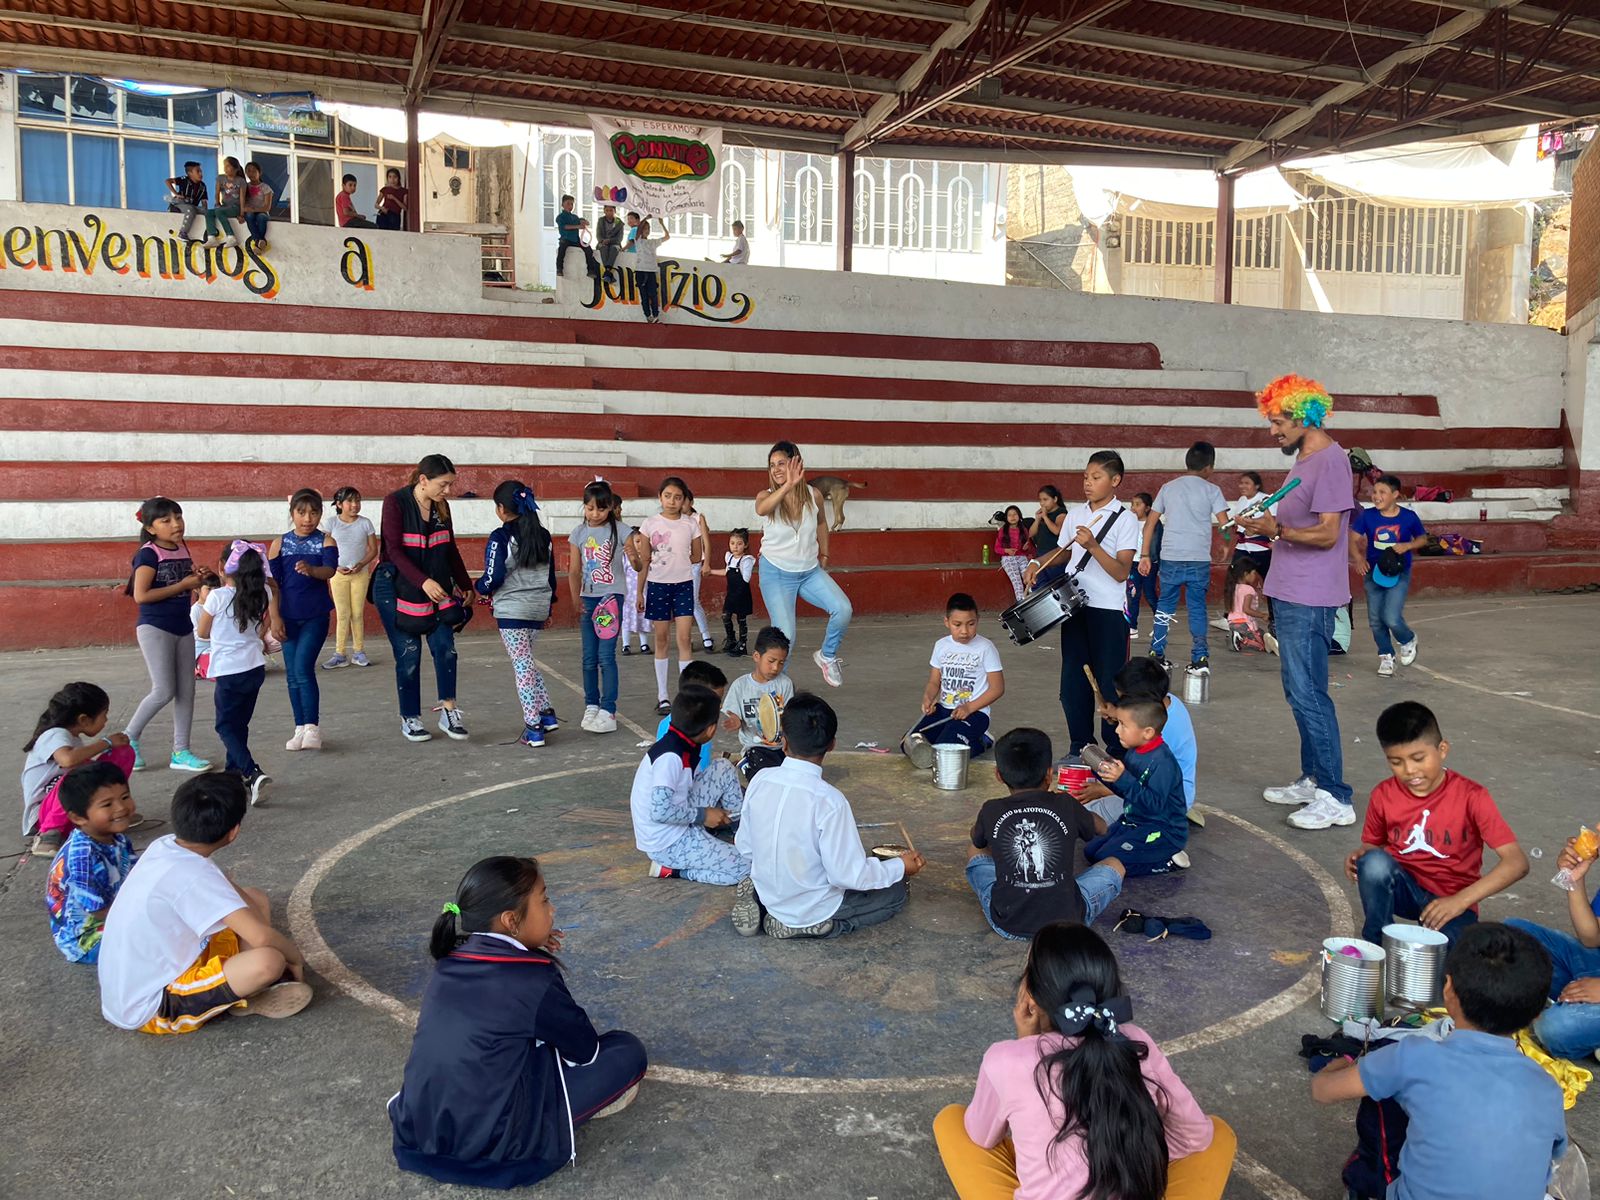 Entrada:Pequeño relato sobre el circo social: Convite cultural en Janitzio, Michoacán